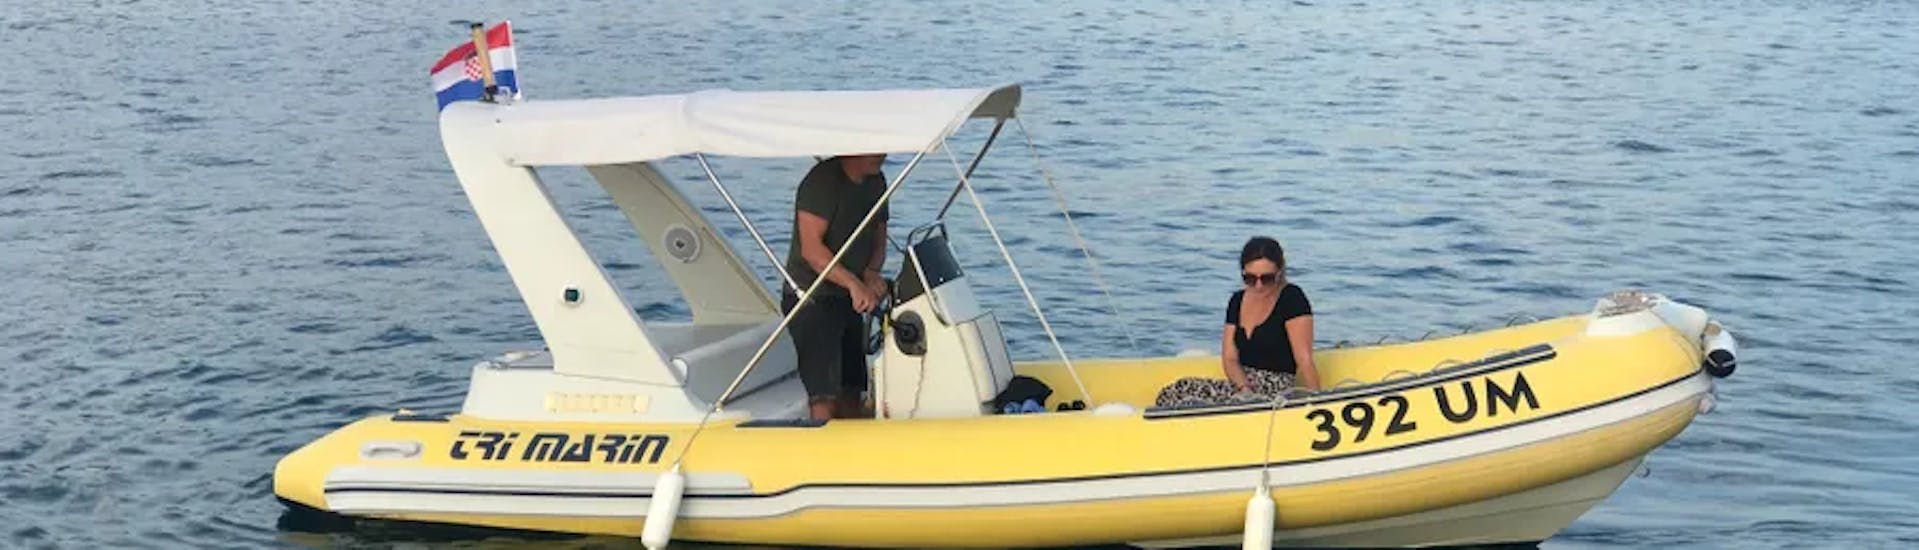 Deux personnes sur l'un des bateaux de location de bateau à Umag (jusqu'à 8 personnes) avec Action & Fun Umag.